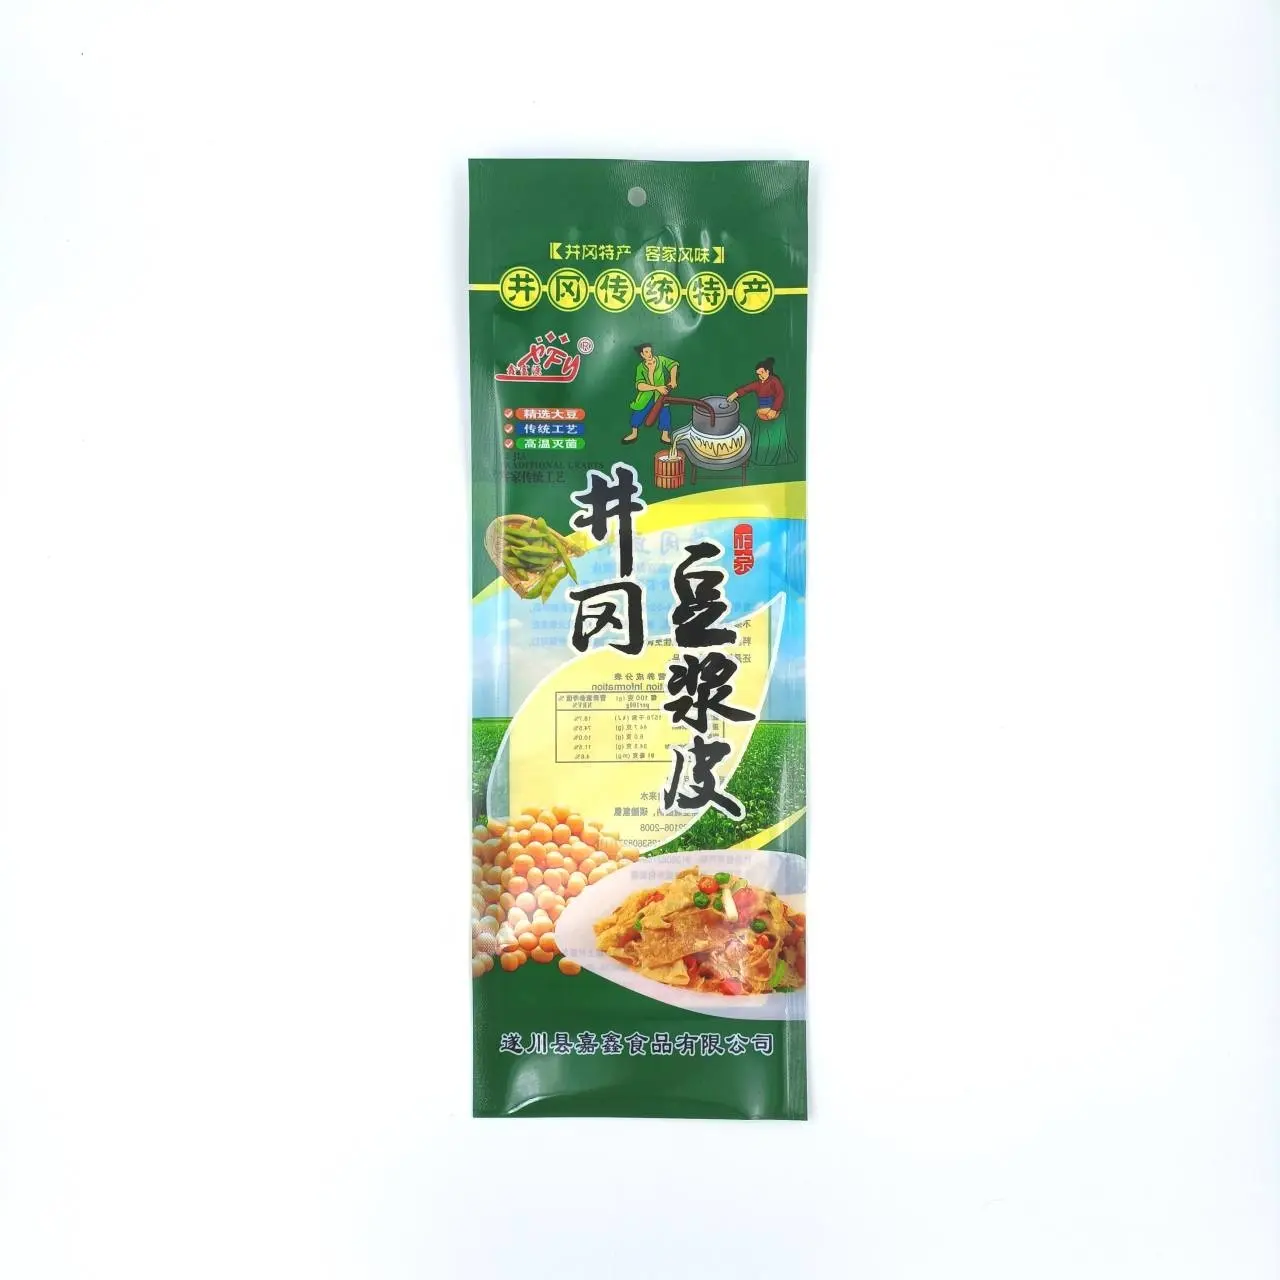 Индивидуальный пакет для упаковки соевых продуктов, непроницаемый и герметичный трехсторонний пакет для упаковки пищевых продуктов